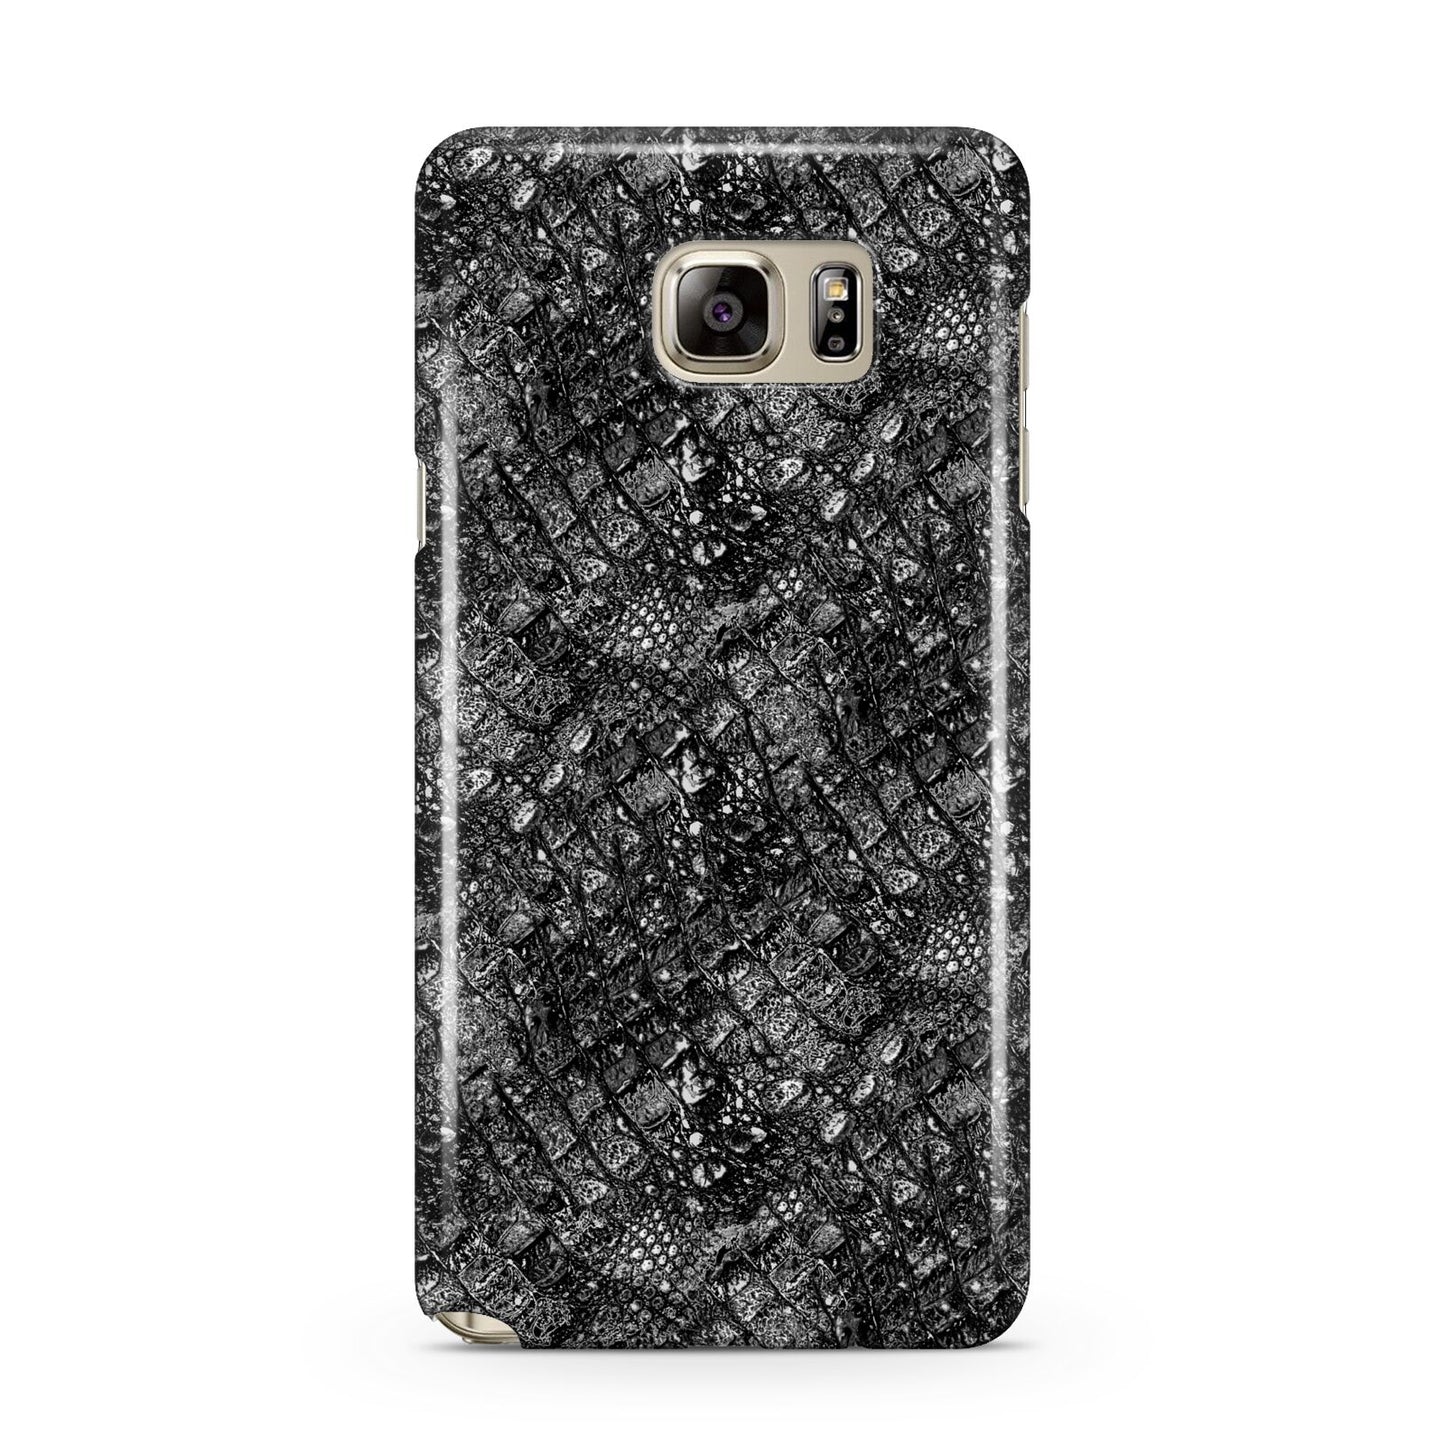 Snakeskin Design Samsung Galaxy Note 5 Case